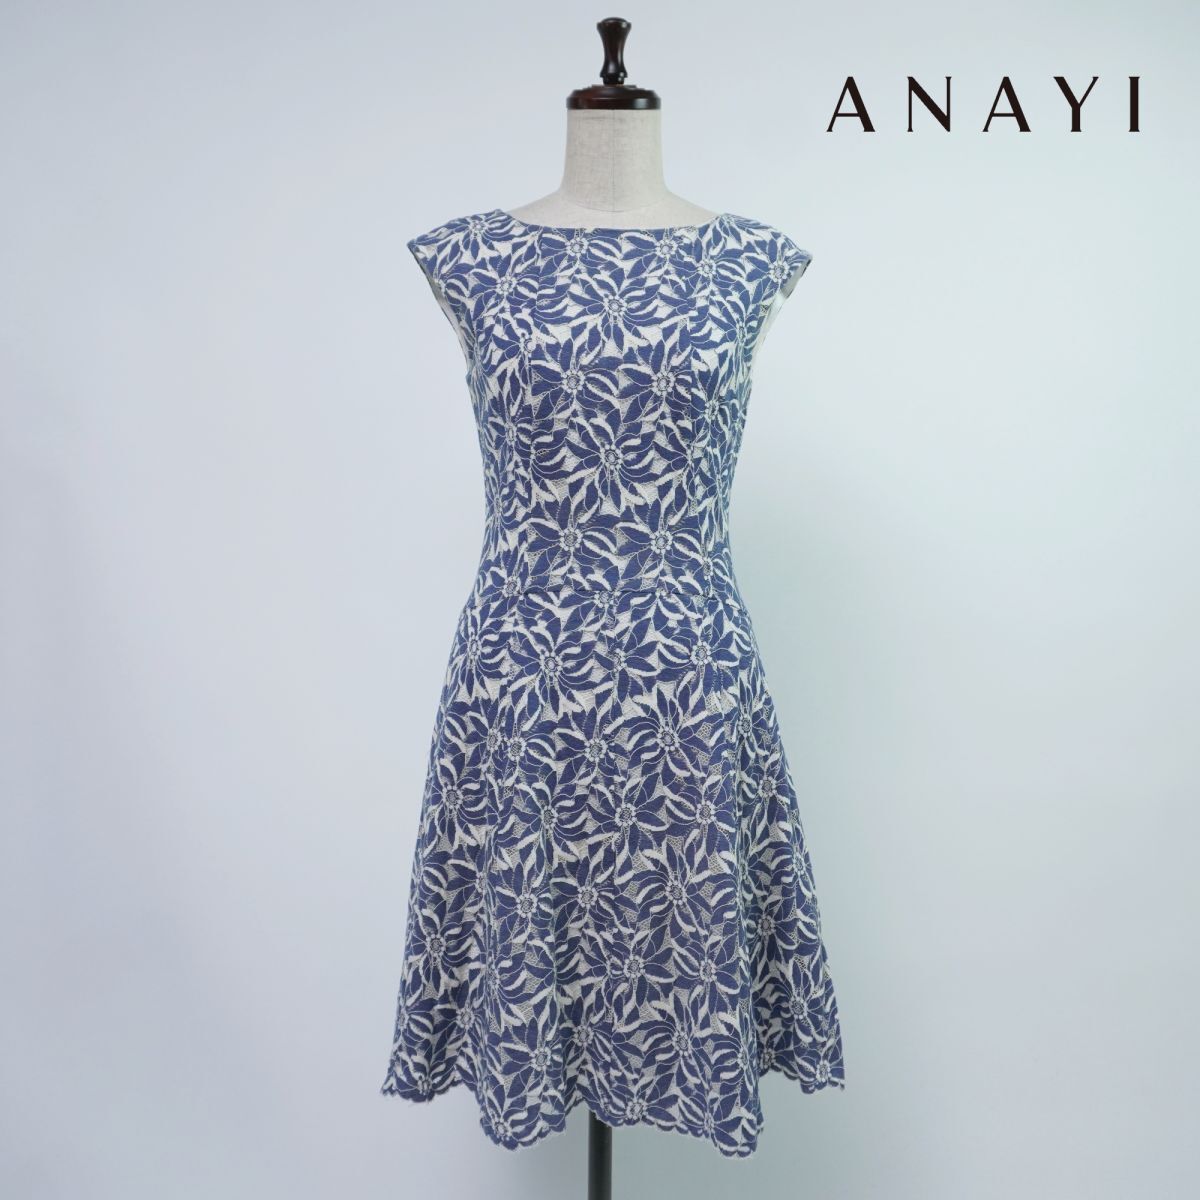 ANAYI Anayi цветочный принт общий гонки semi рукав колени длина flair One-piece подкладка есть женский синий голубой размер 36*OC346